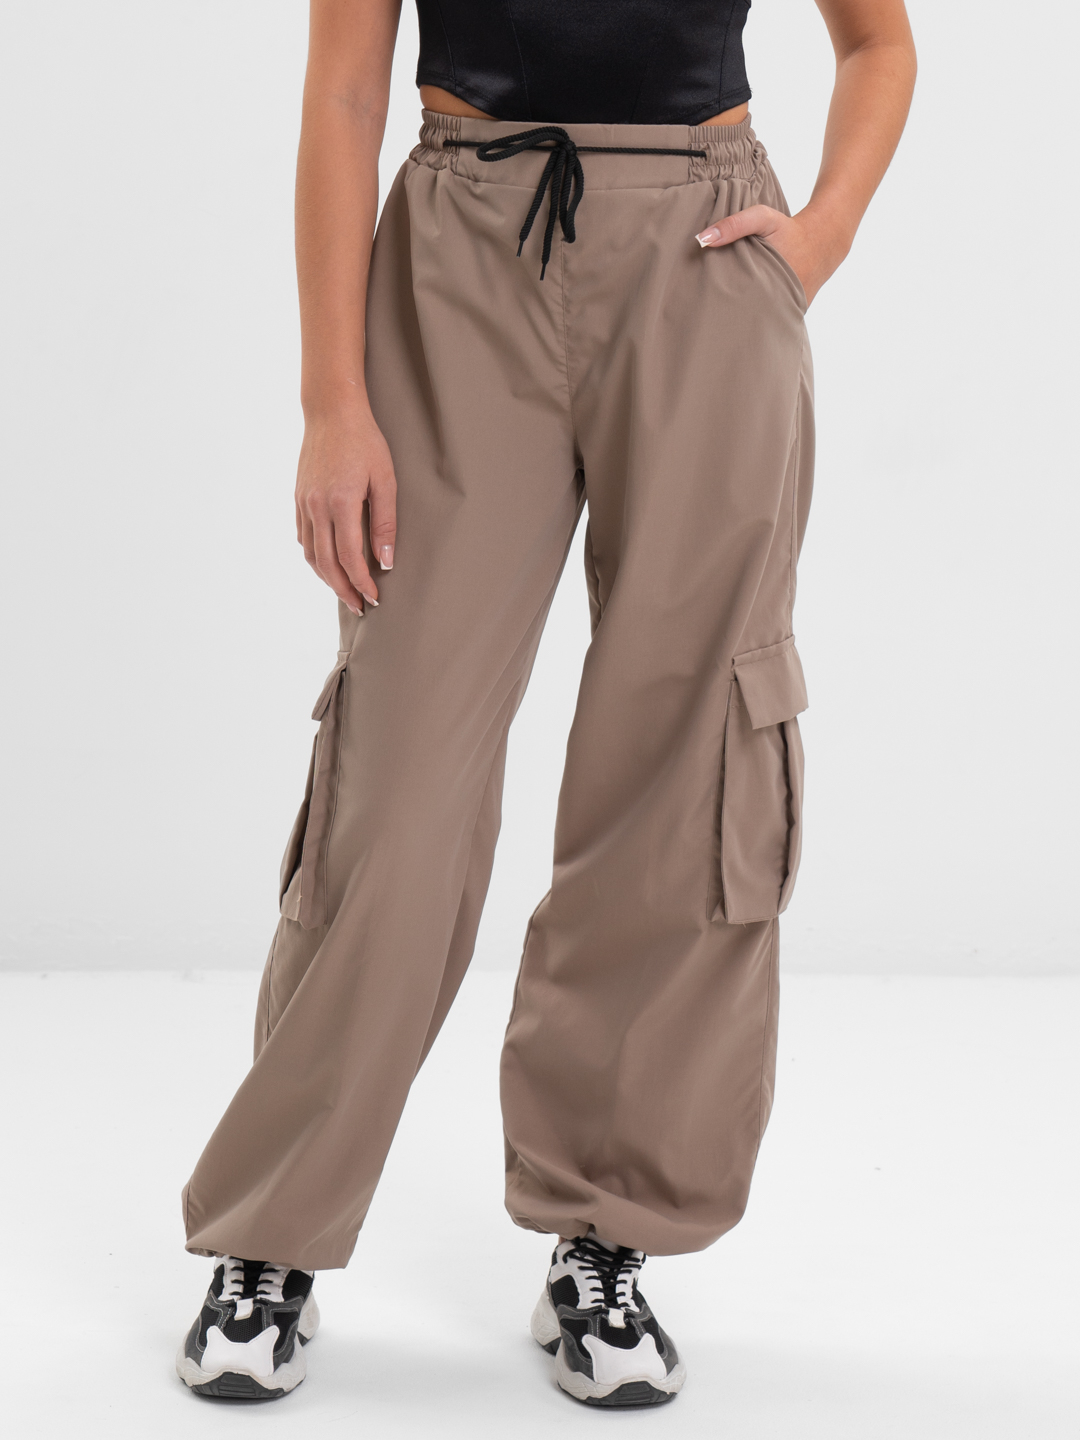 Спортивные брюки карго на резинке с накладными карманами купить по цене1499 ₽ в интернет-магазине KazanExpress